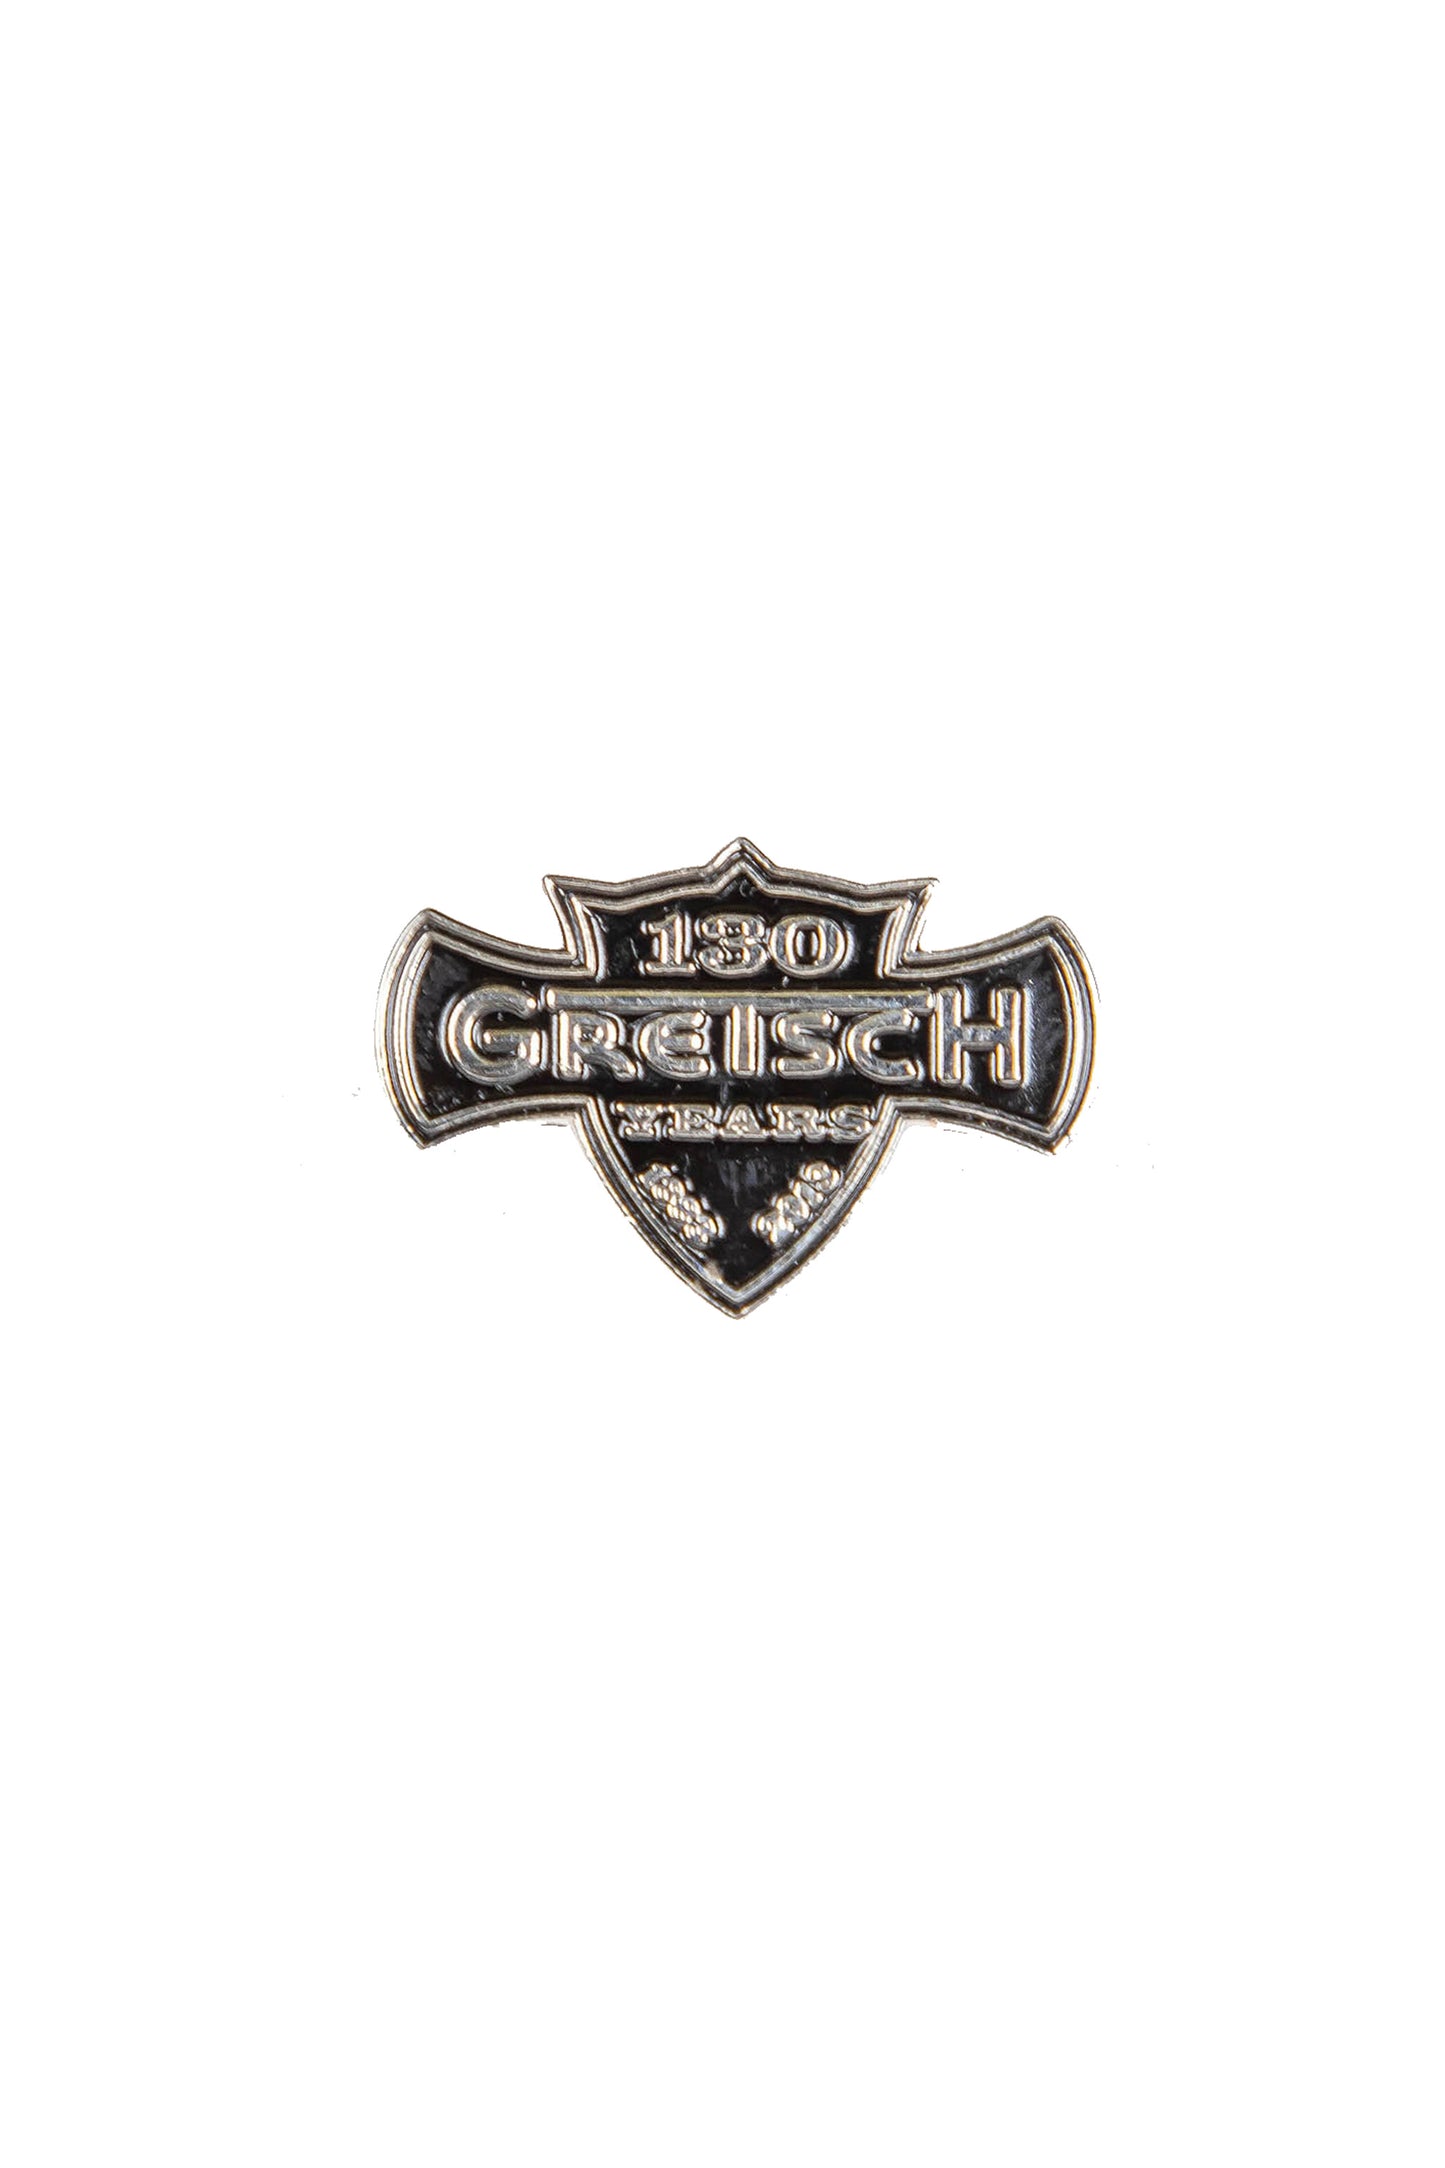 130th Gretsch Anniversary Lapel Pin - GretschGear